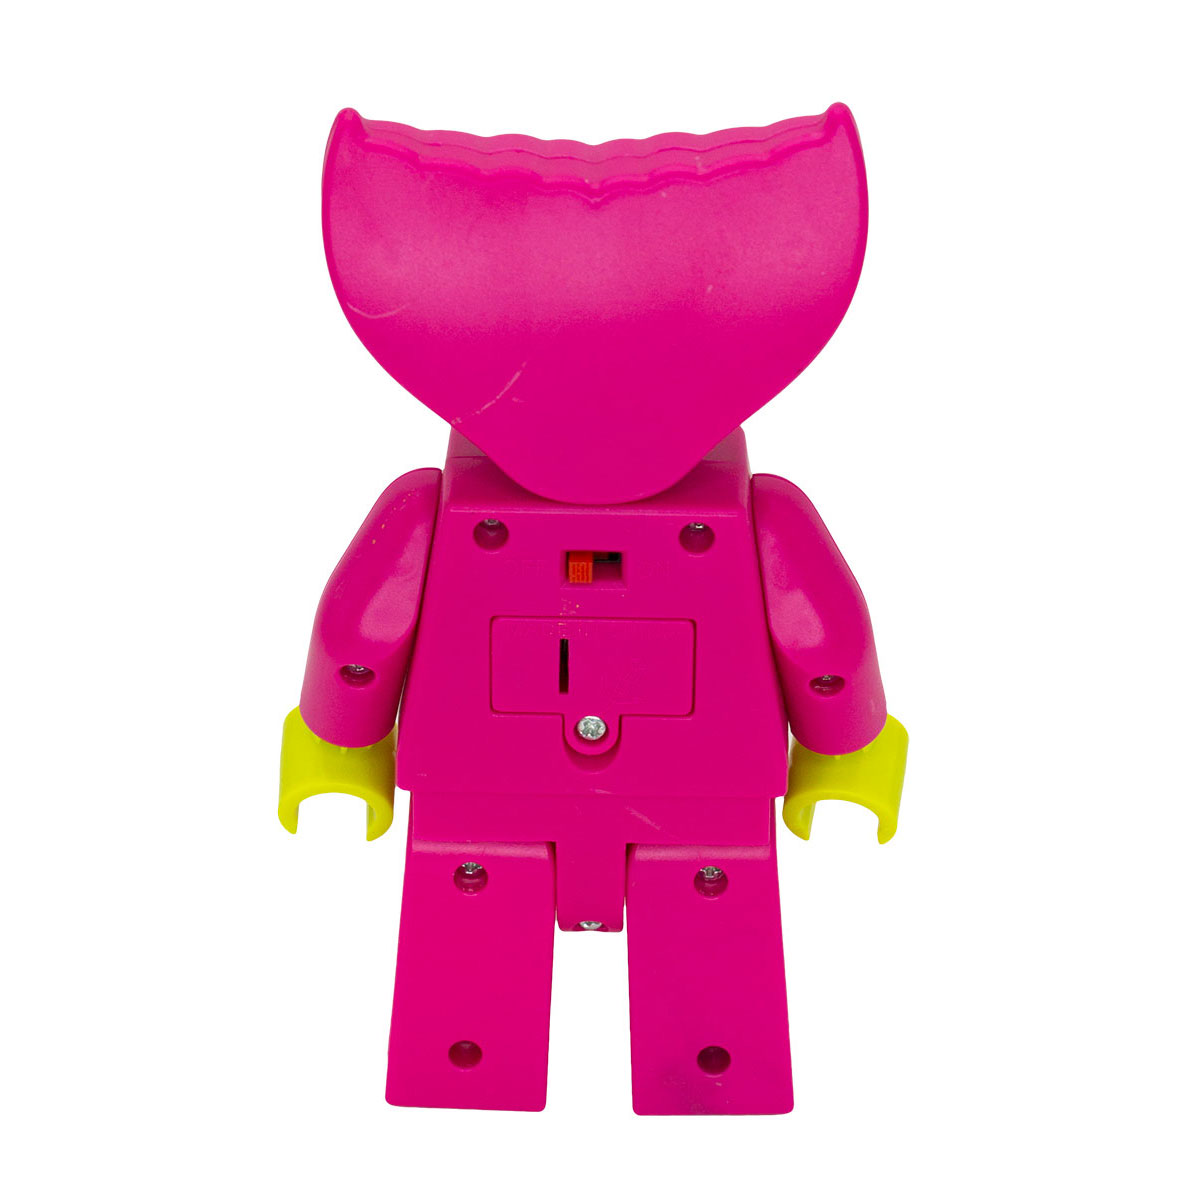 Фигурка Михи-Михи Кисси Мисси с подсветкой розовая 18 см - фото 6